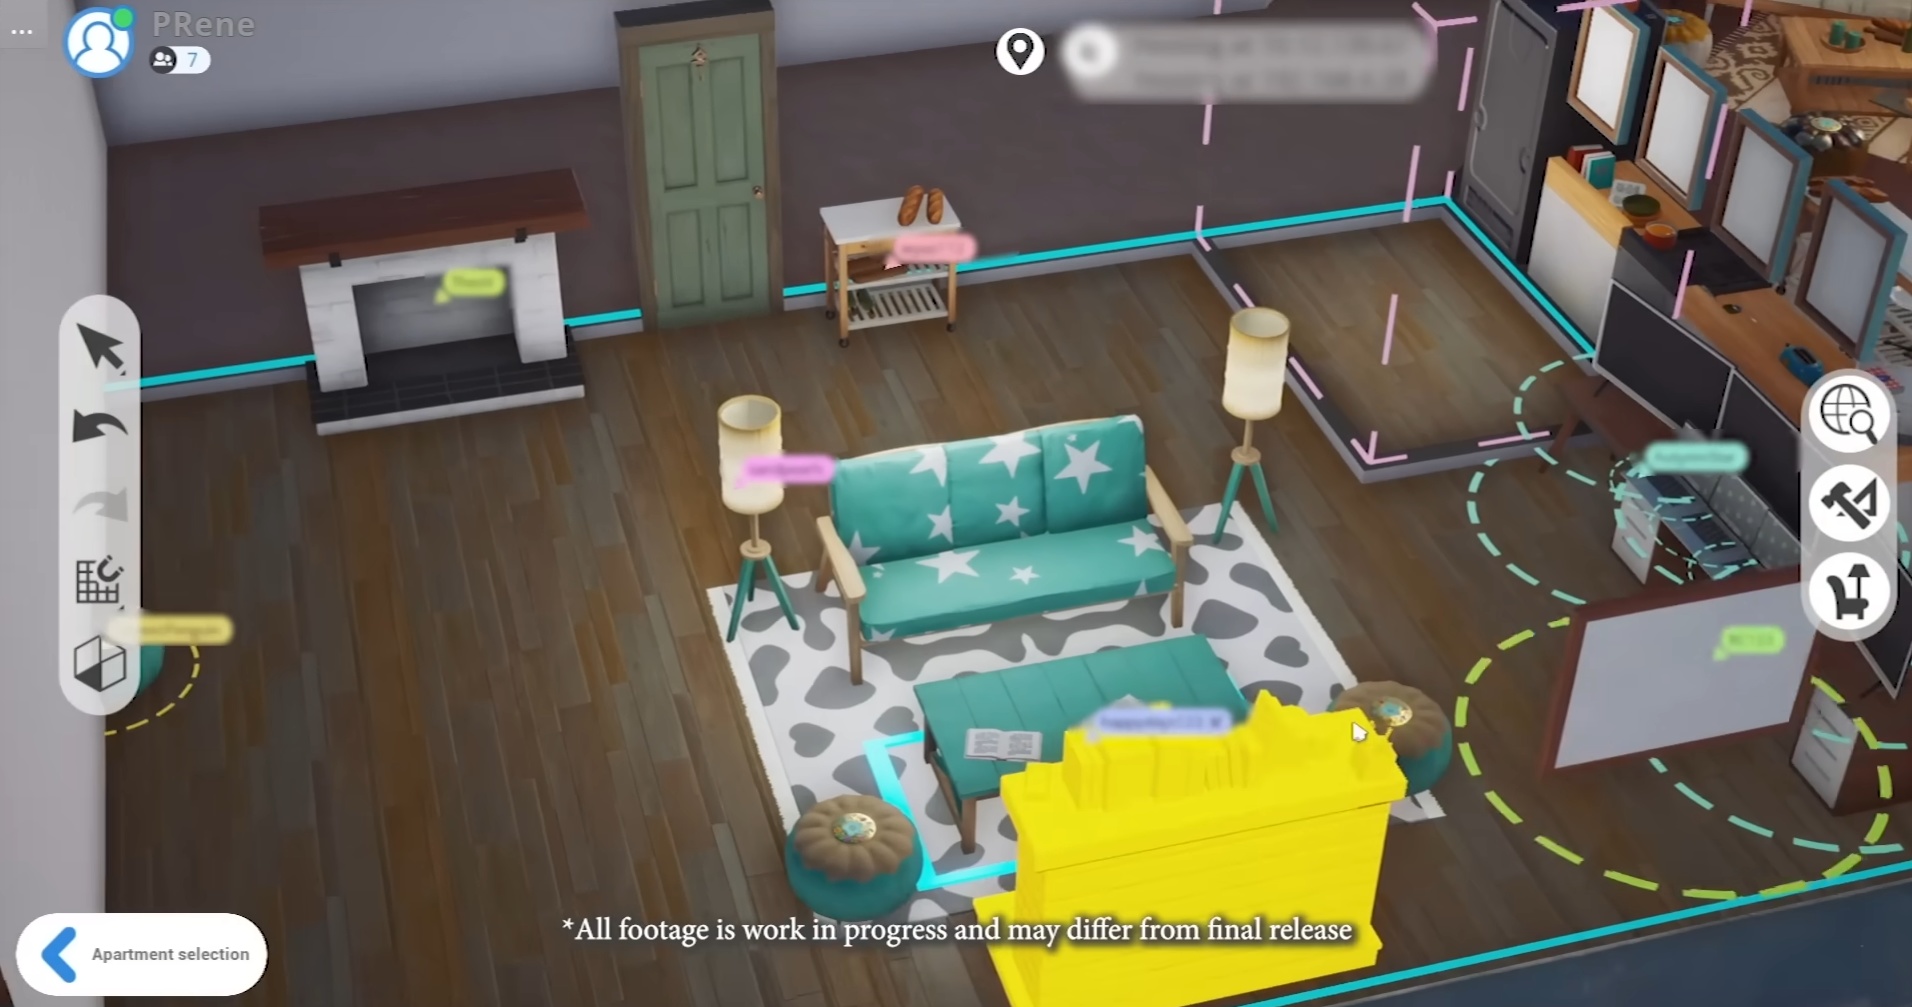 (Relaties en vriendschappen zijn al verbroken bij het inrichten van echte flats. Of het beter werkt in De Sims 5 valt nog te bezien.)